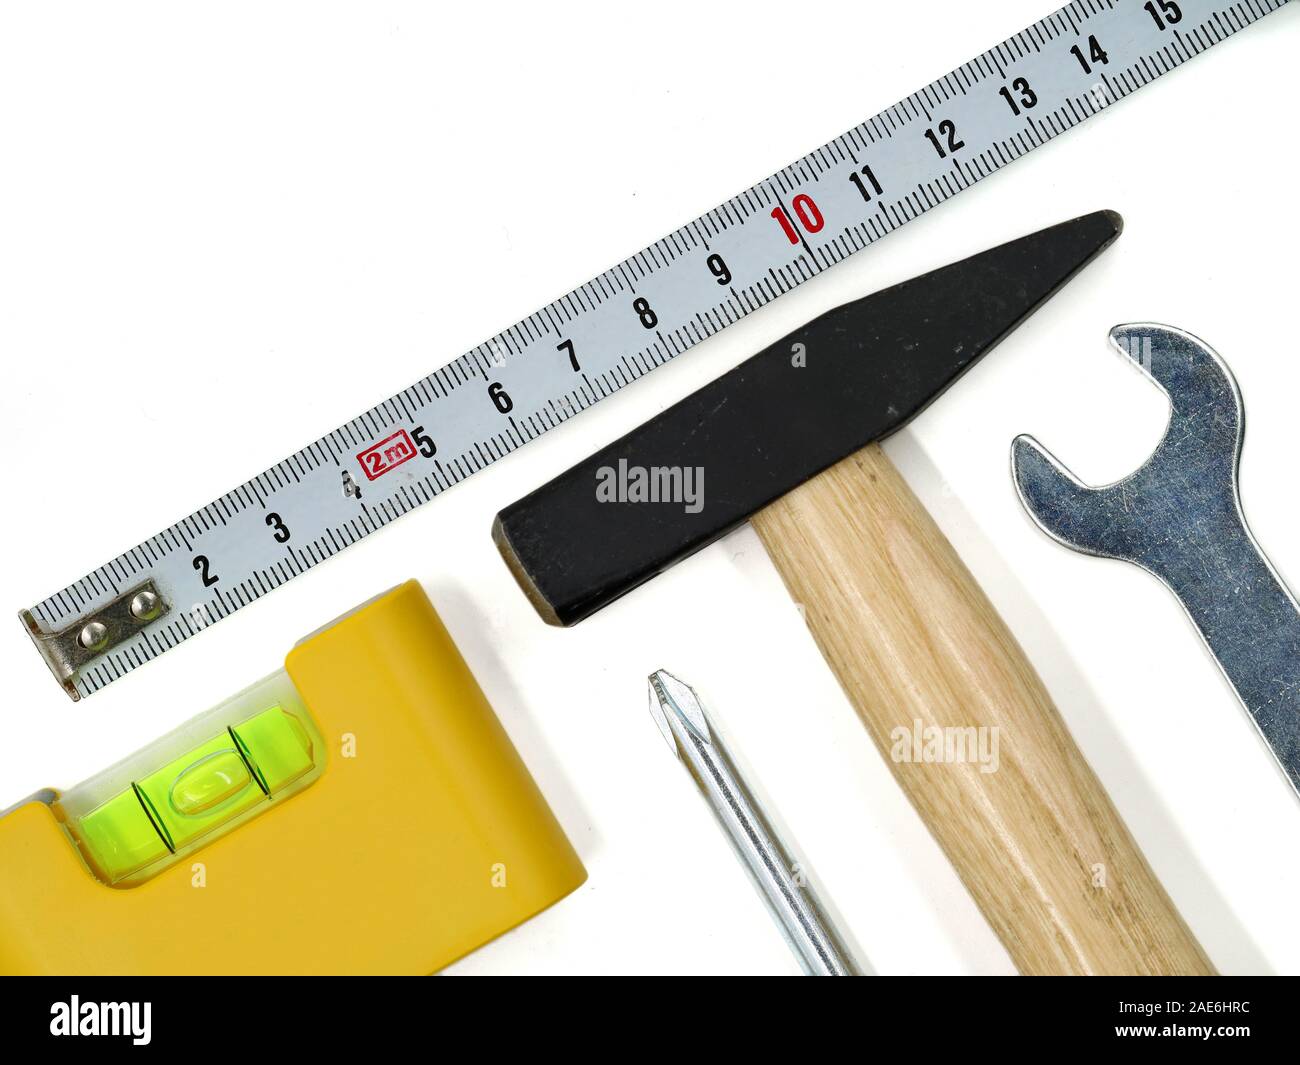 Vista superior de herramientas de trabajo aislado sobre fondo blanco. Conjunto de herramientas con un martillo, nivel, destornillador, llave y cinta métrica, espacio de copia Foto de stock